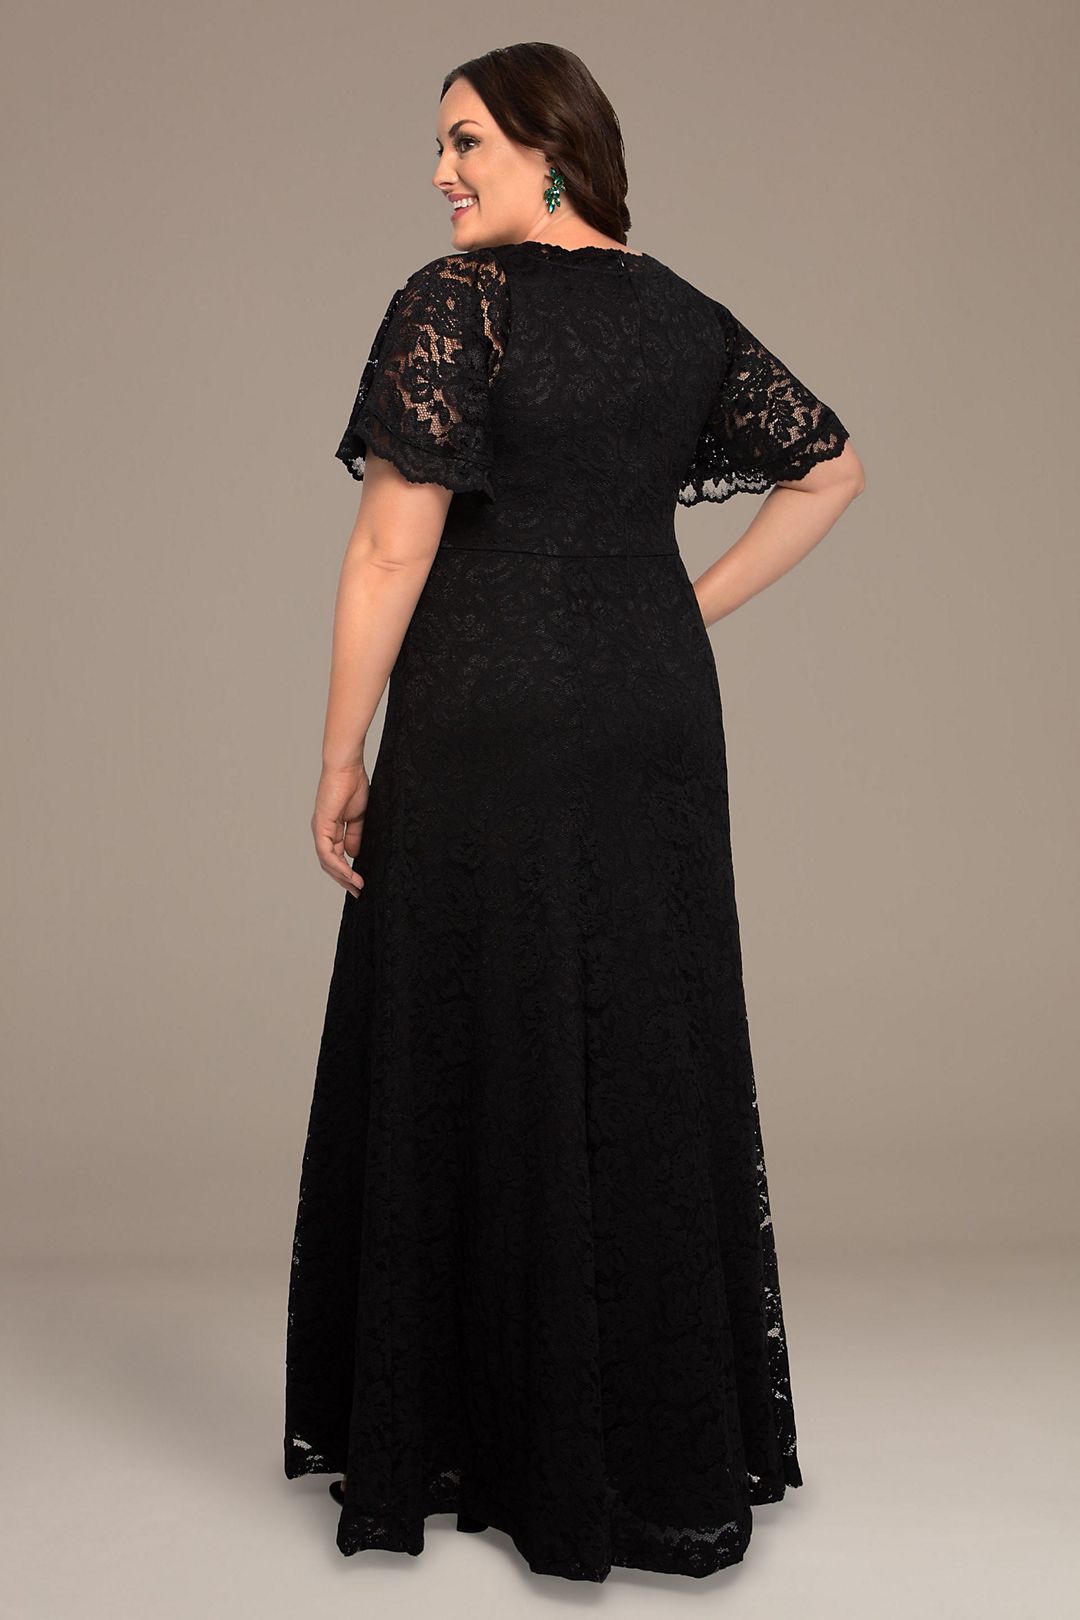 Symphony Lace Plus Size Evening Gown Image 2